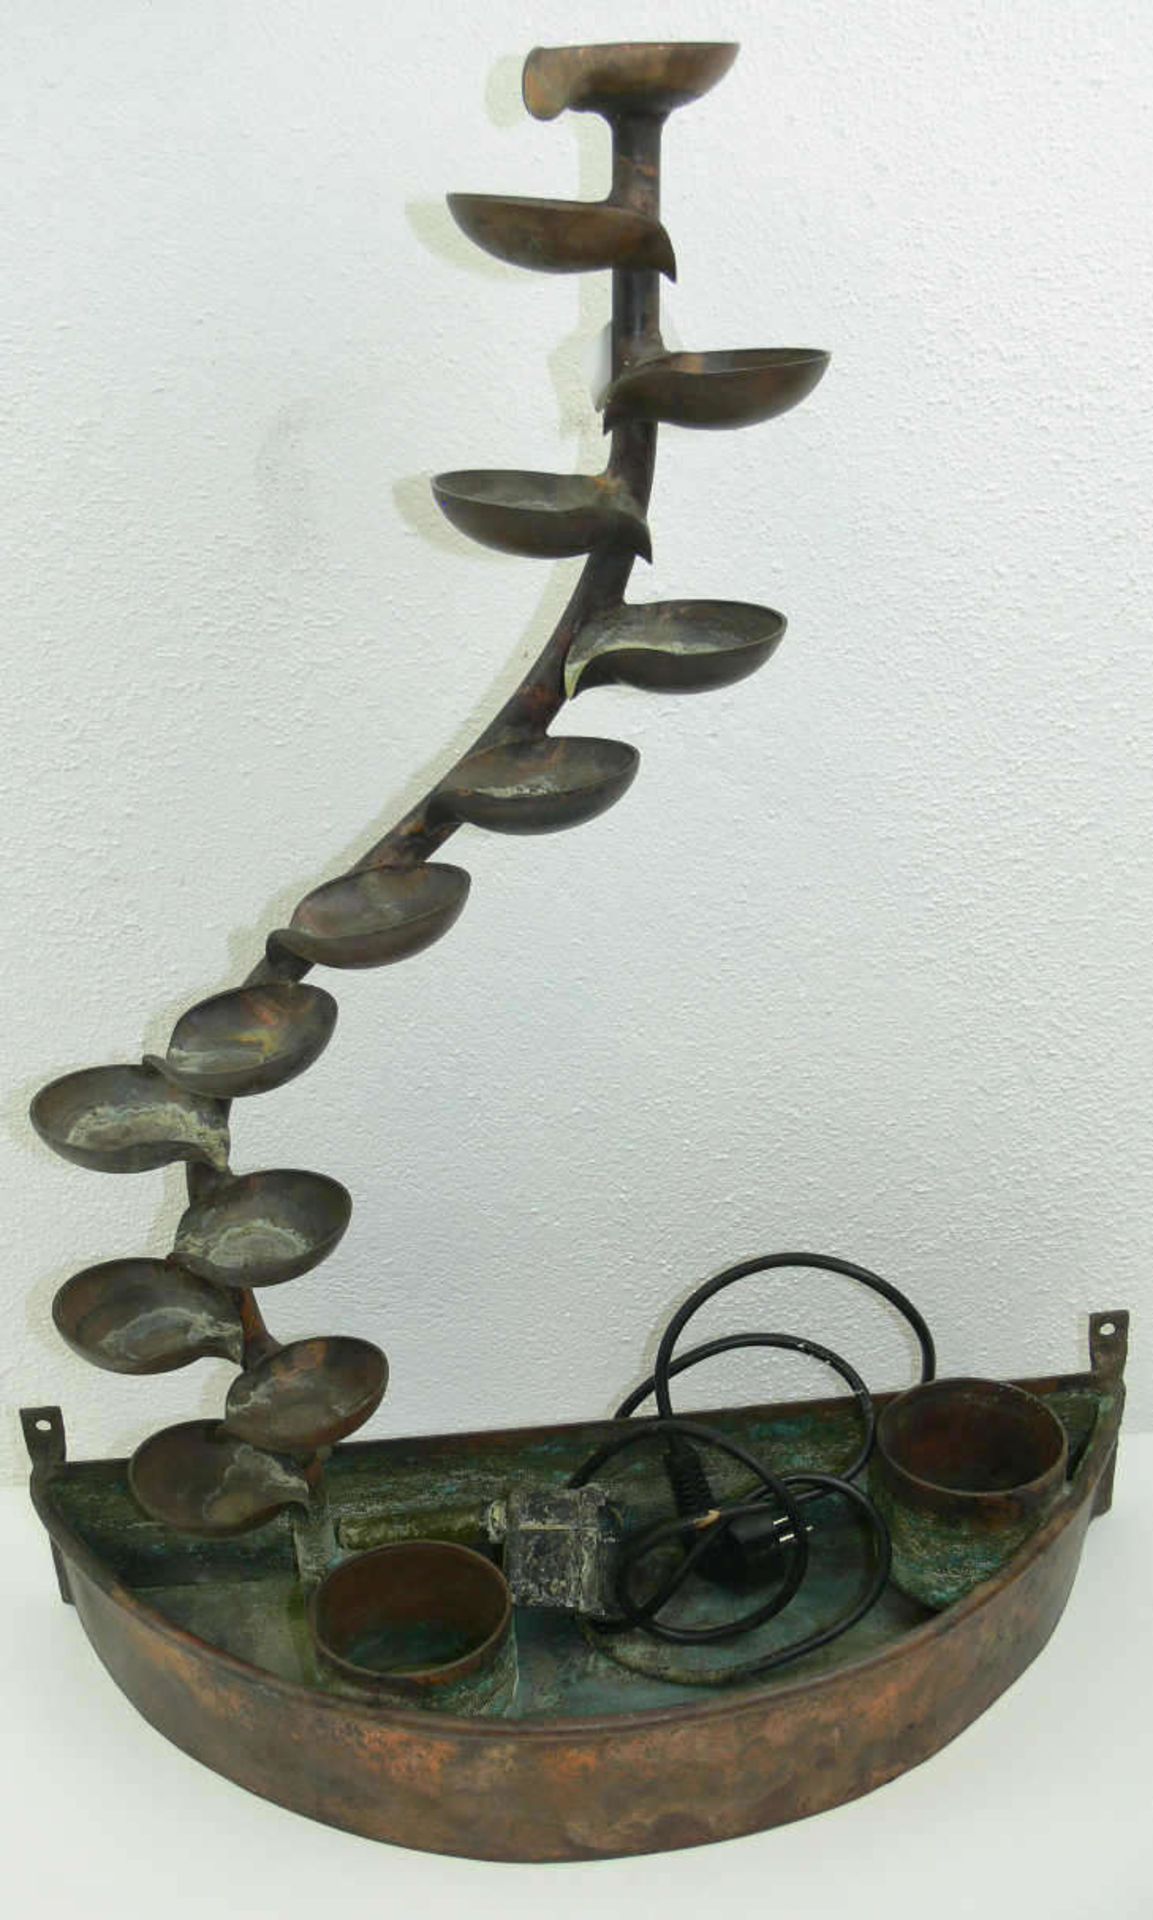 Kupfer - Brunnen. H: ca. 62 cm. Mit Wasser - Vorratsbehälter aus Kupfer. Mit Pumpe. Funktion nicht